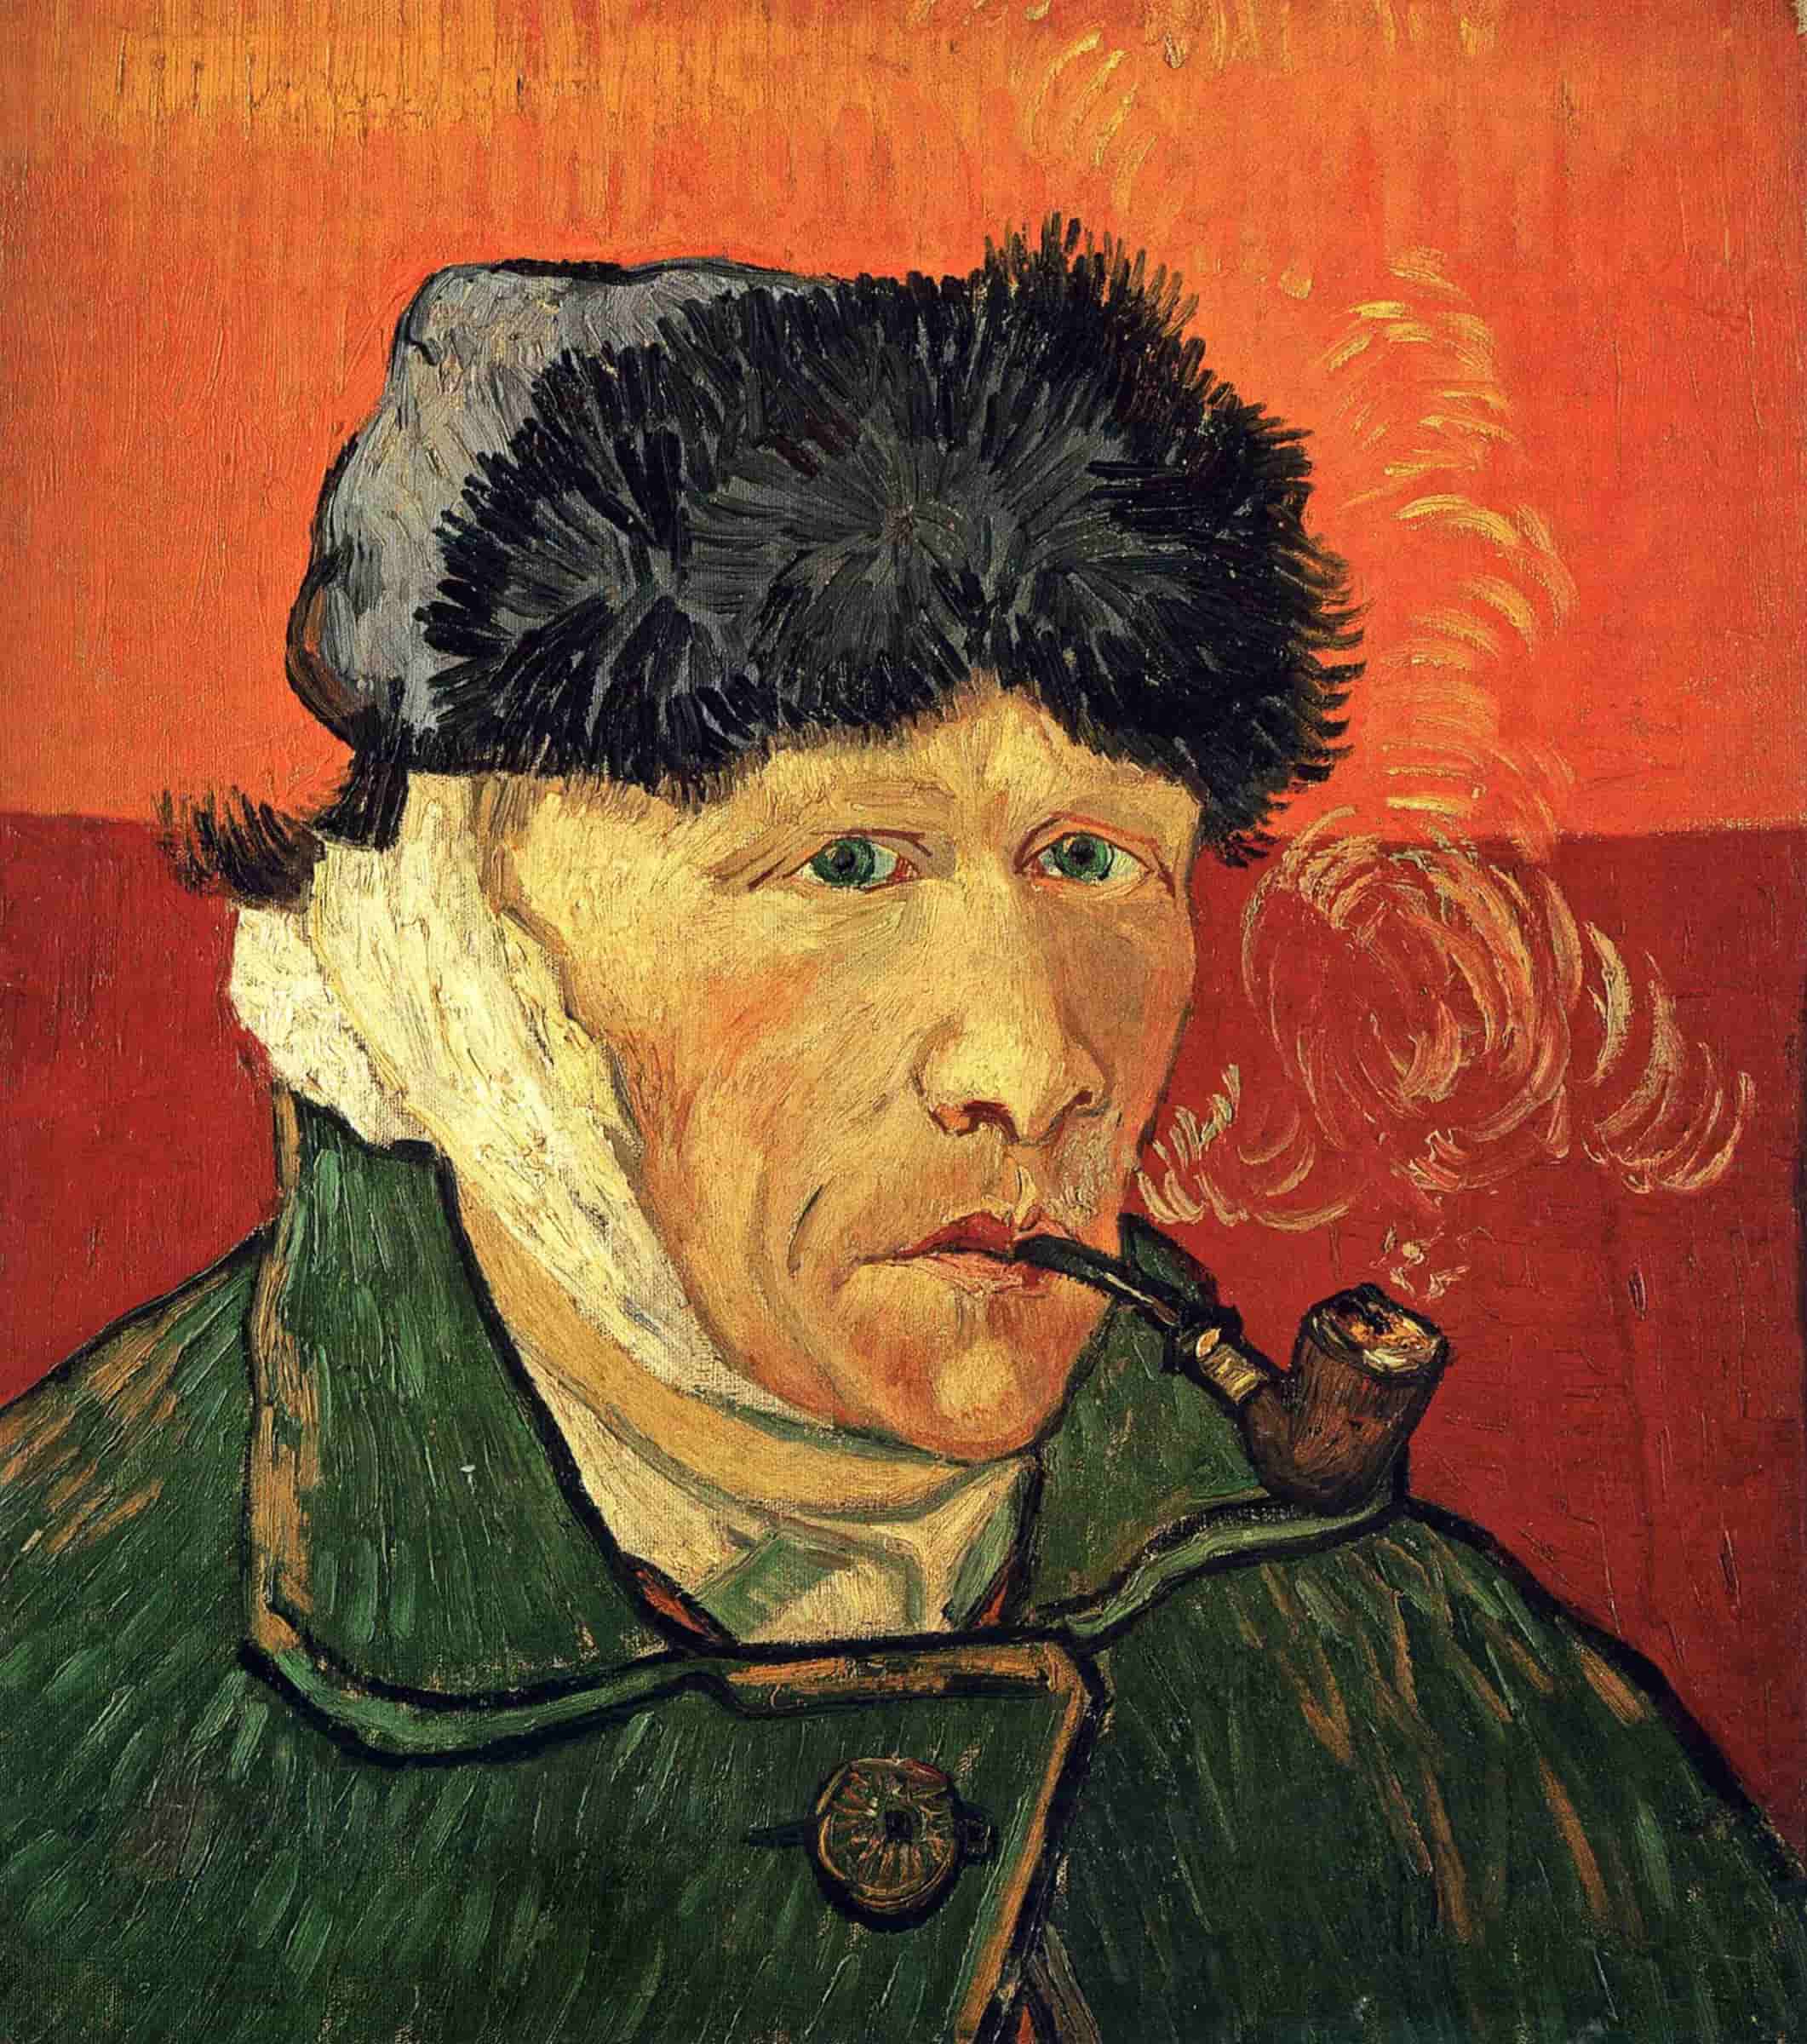 Кто популяризировал творчество Винсента Ван Гога после его смерти ещё долгое время?